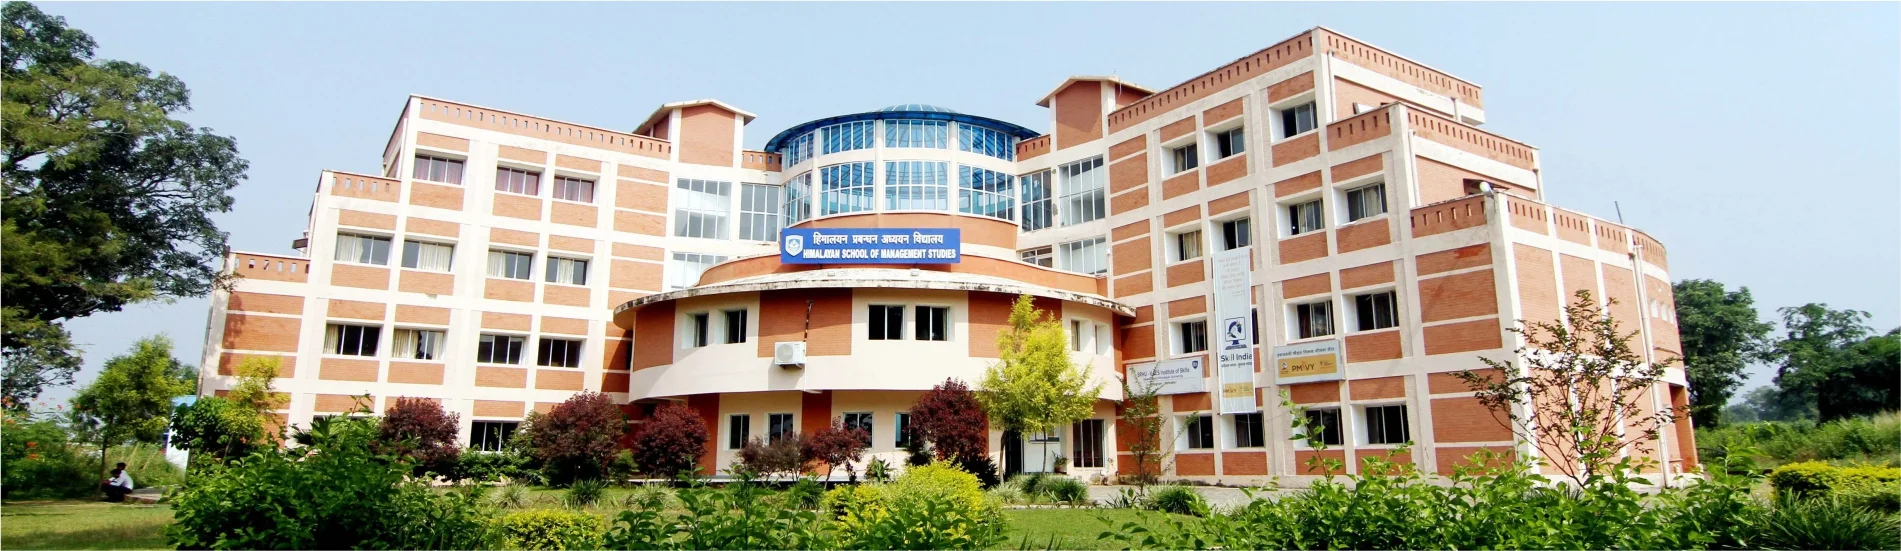 Himalayan School Of Bio Sciences Building